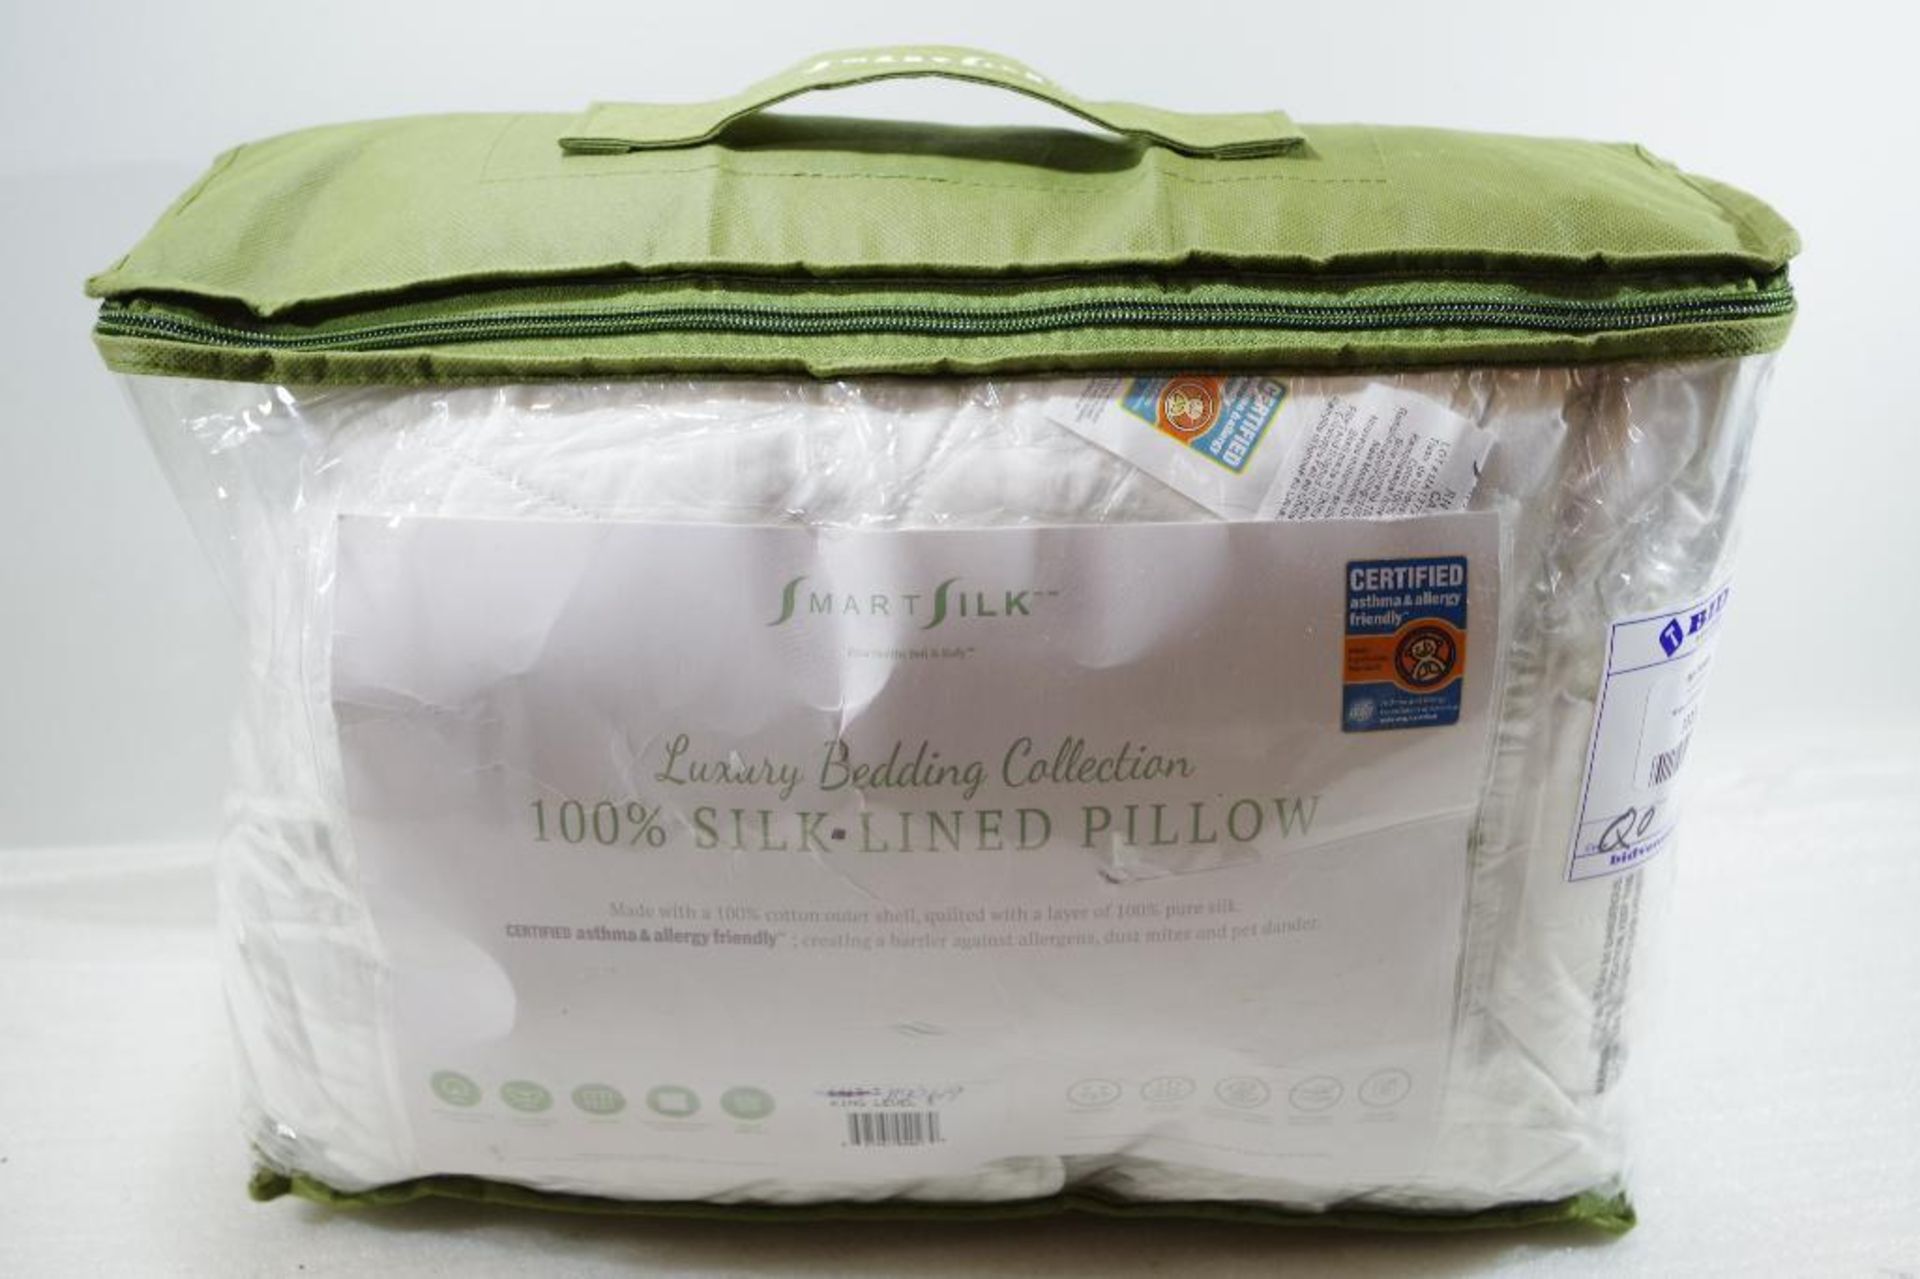 SMART SILK King 100% Silk Lined Pillow, Store Return